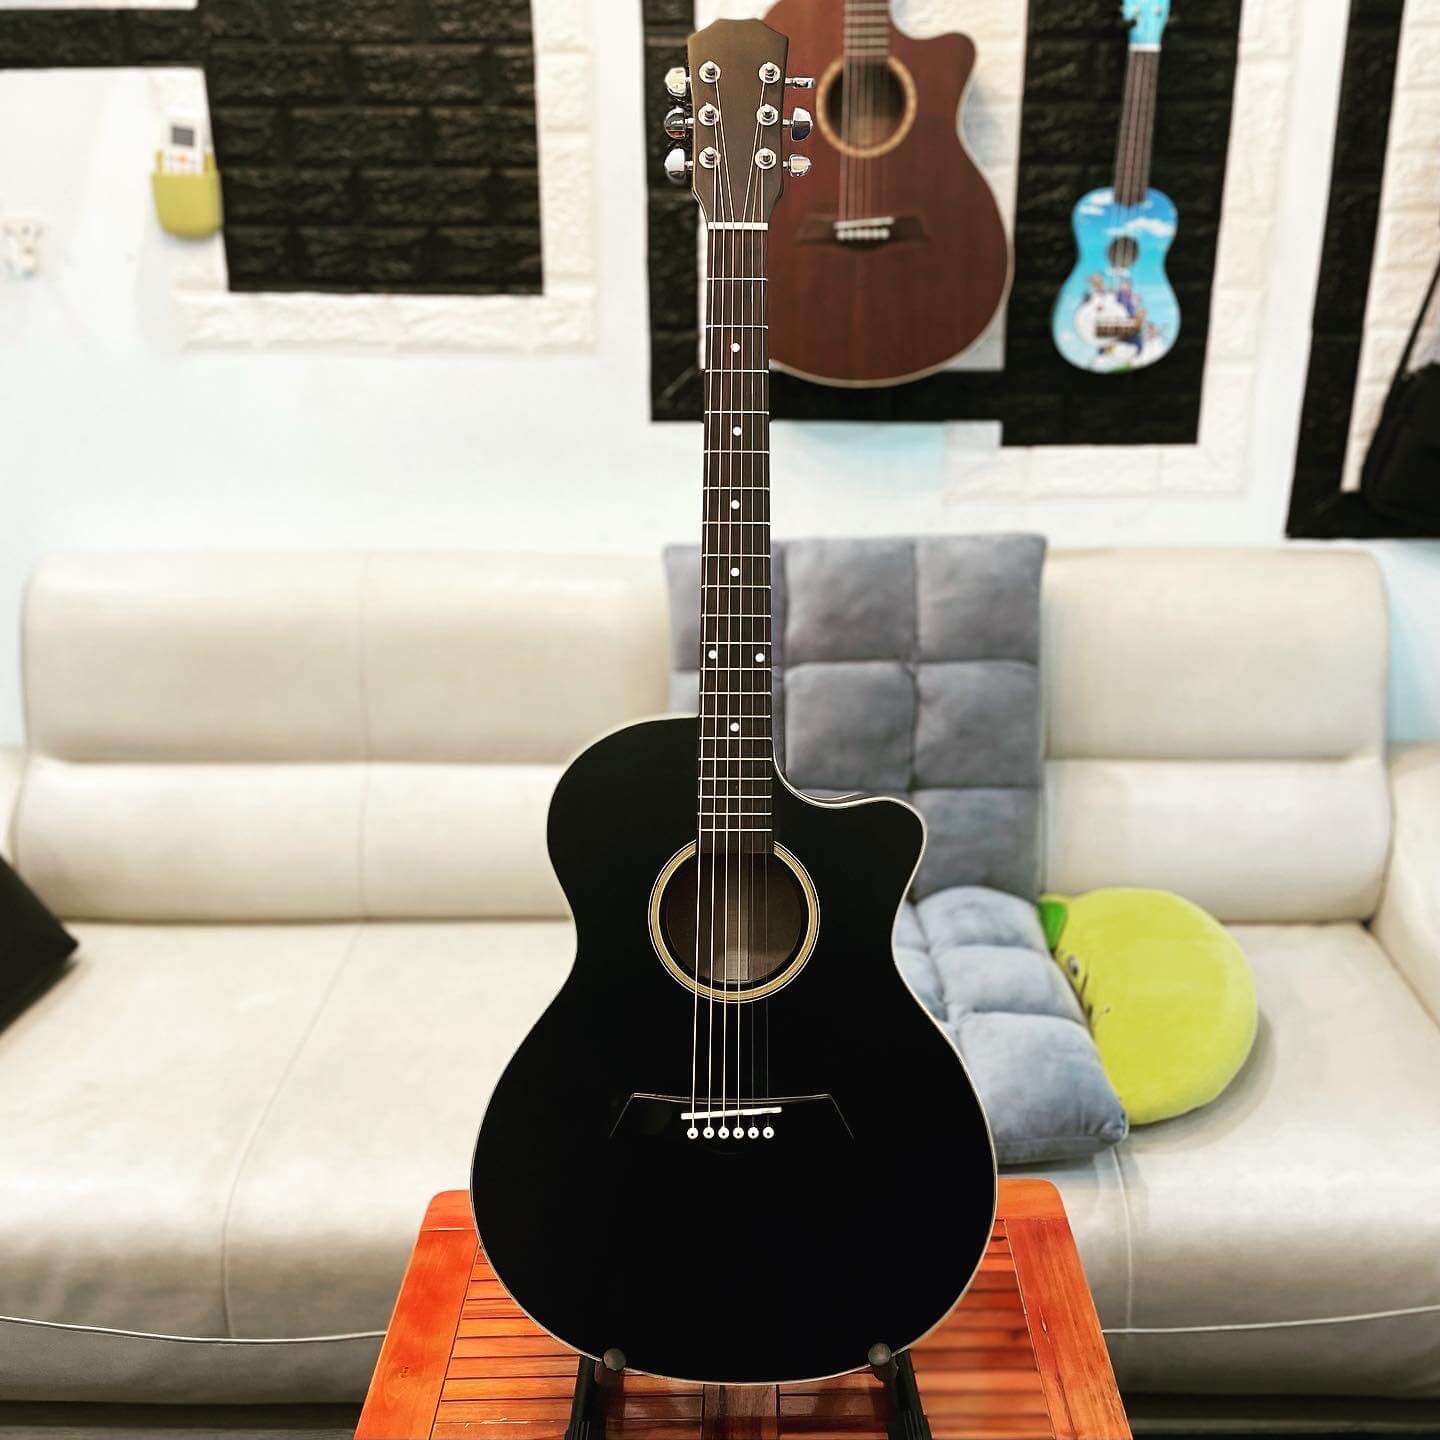 Guitar Acoustic màu đen thùng khuyết SG-HD-B01 - Saigon Guitar mini